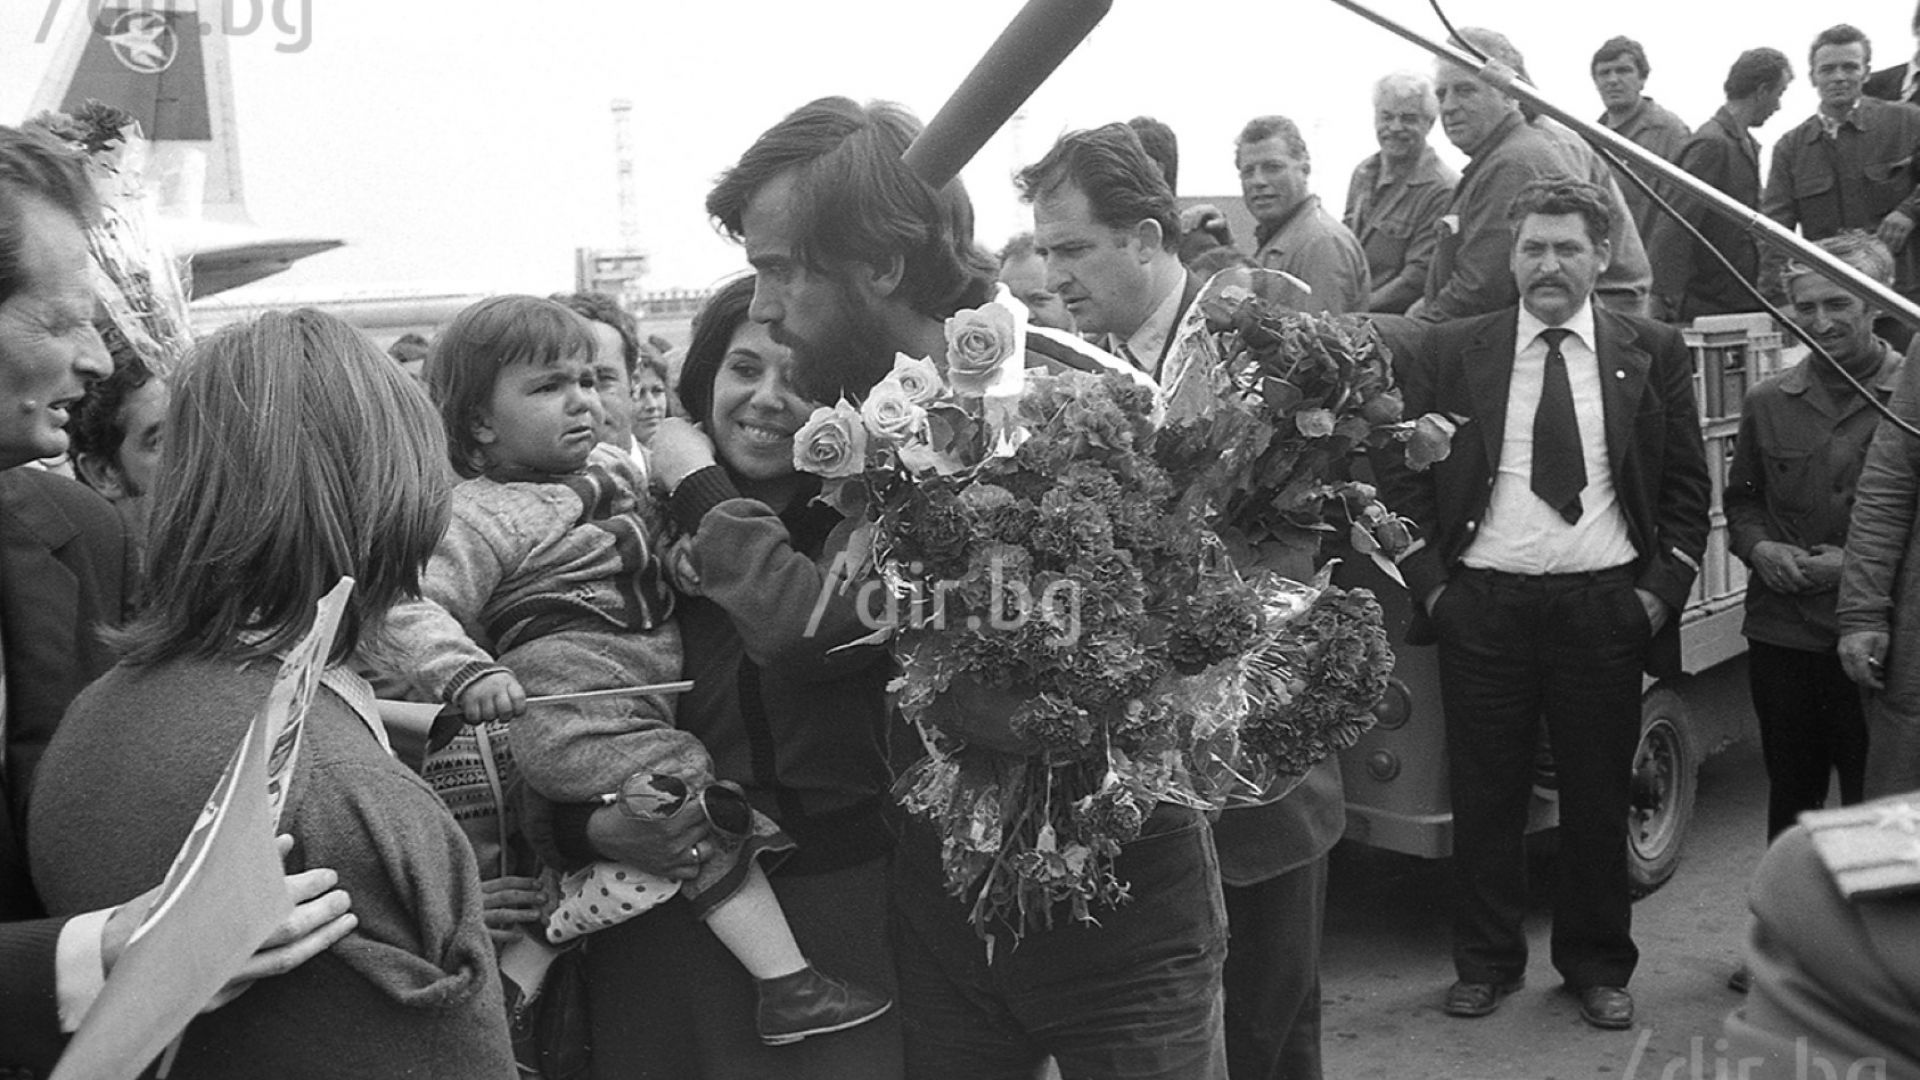 22 май 1981 г. - посрещане у дома на Христо Проданов и останалите от експедицията след успешното изкачване на връх Лхоце